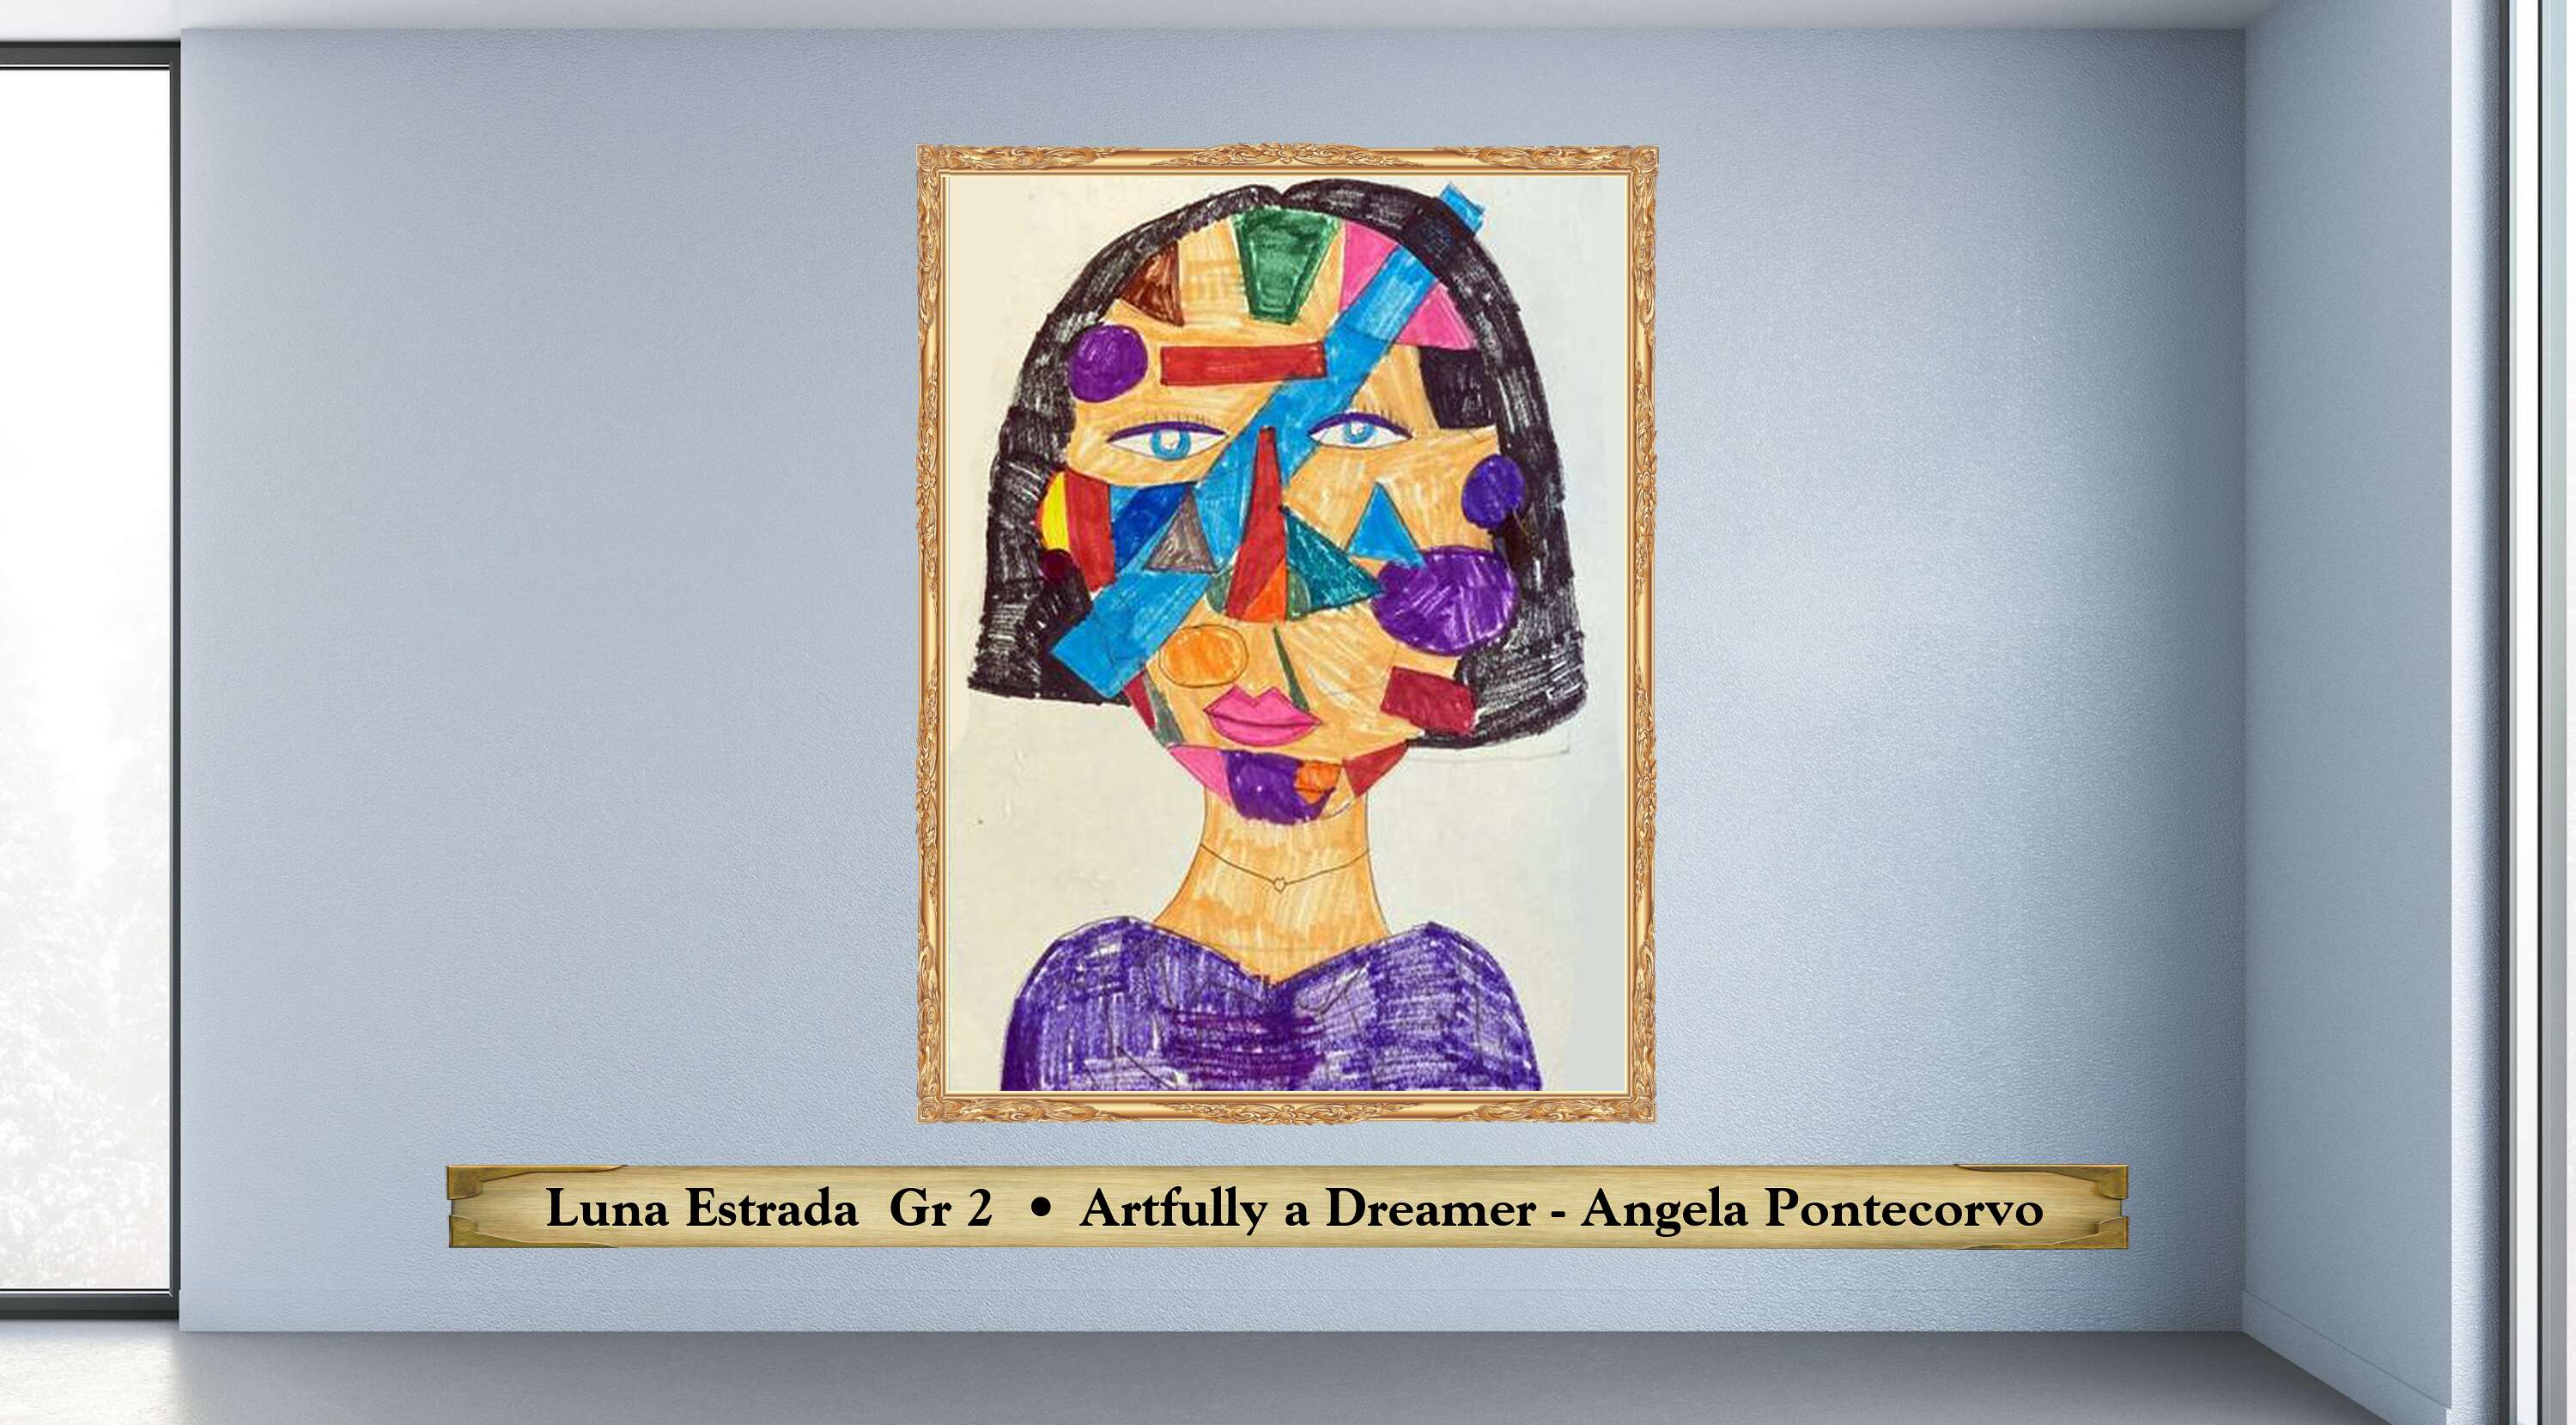  Luna Estrada  Gr 2  • Artfully a Dreamer - Angela Pontecorvo